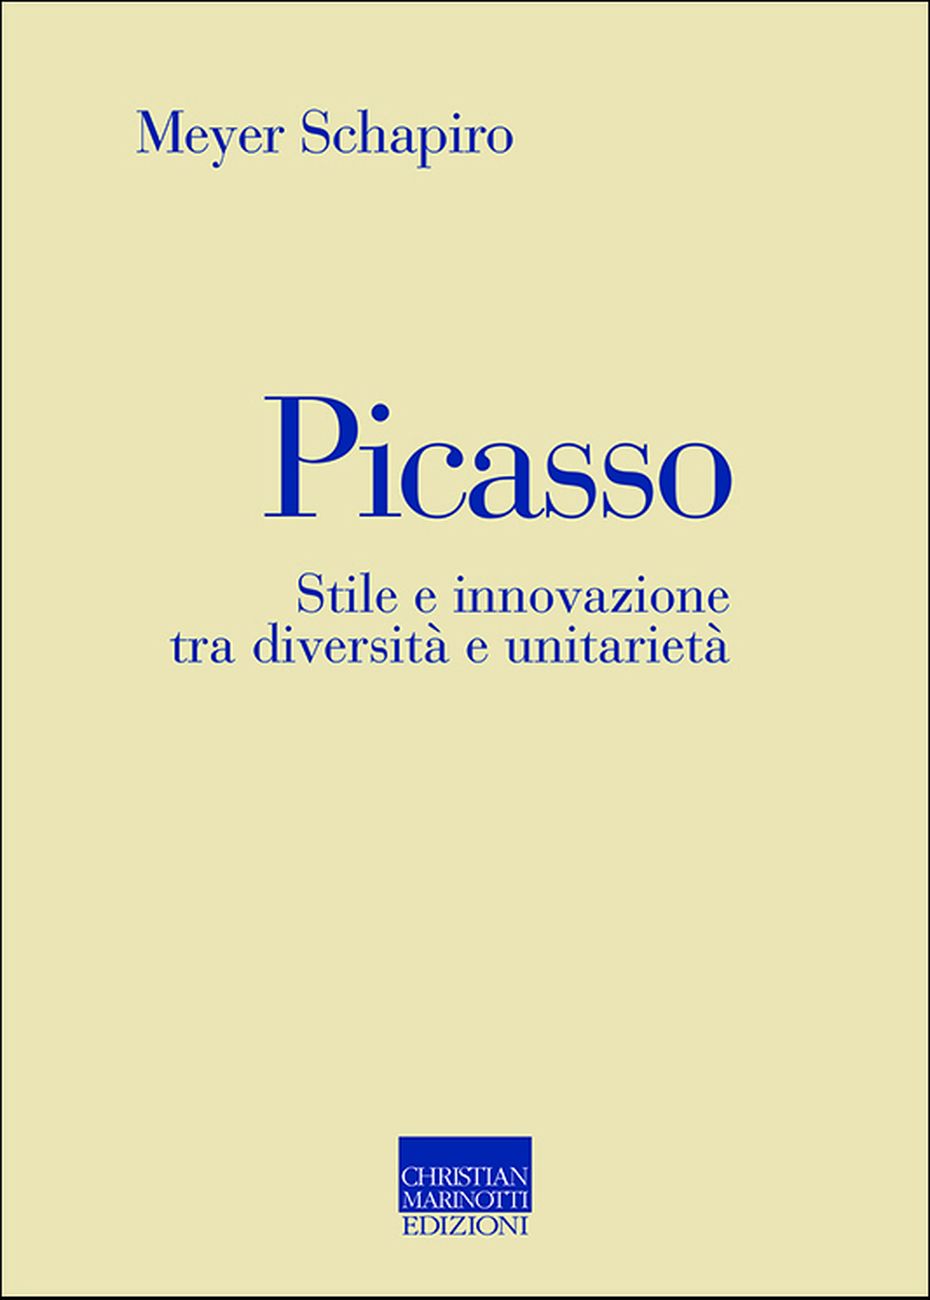 Meyer Schapiro – Picasso (Christian Marinotti, Milano 2017)